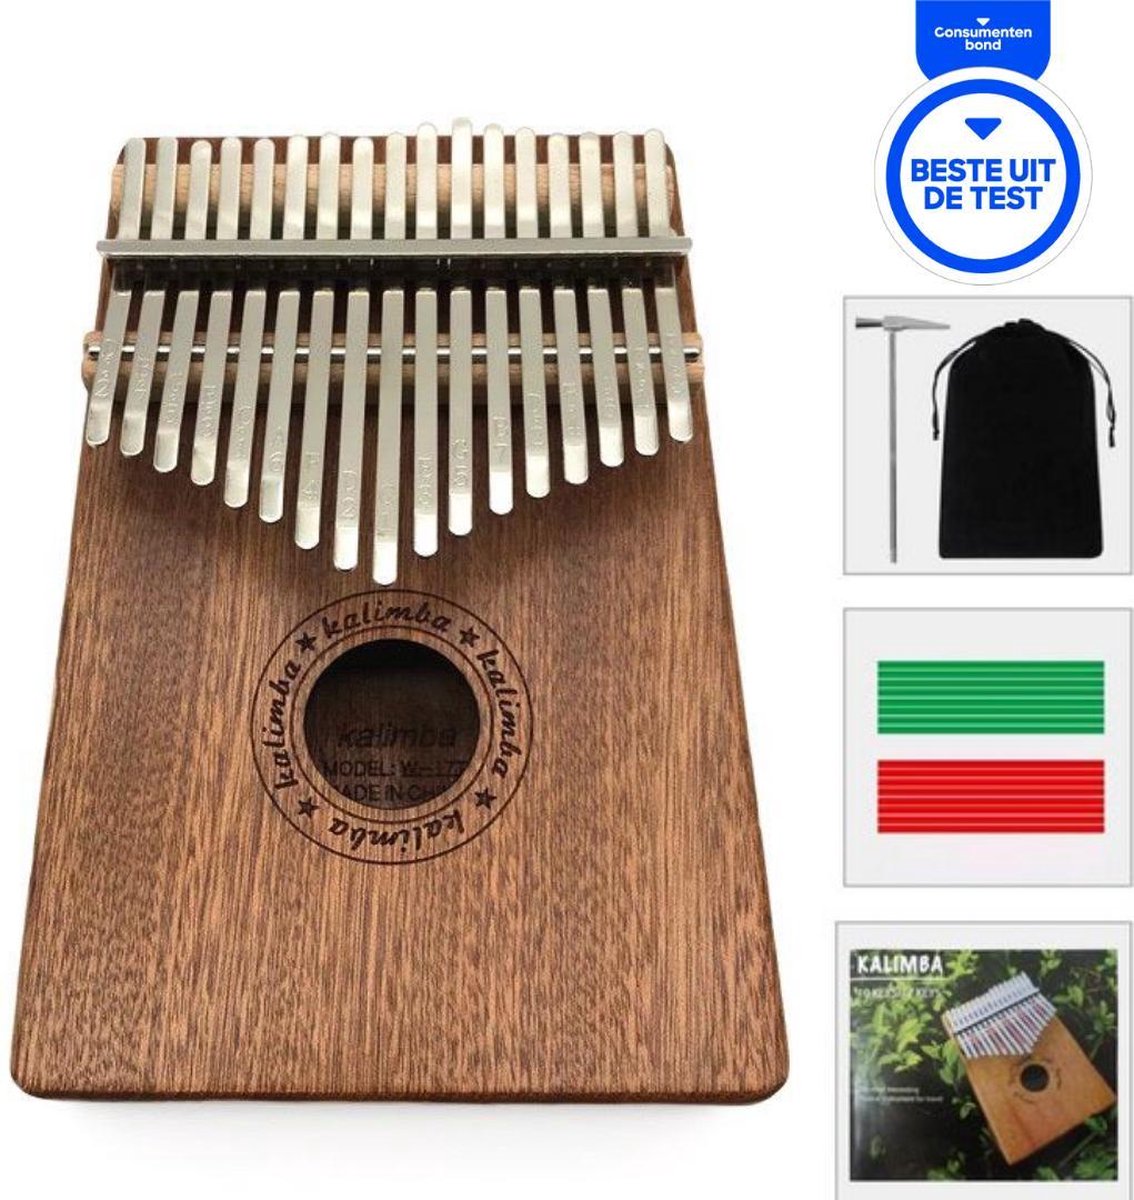 Kalimba - Duimpiano 17 Tonen - Mbira Muziekinstrument + GRATIS Tas & Accessoires - Beste Uit De Test